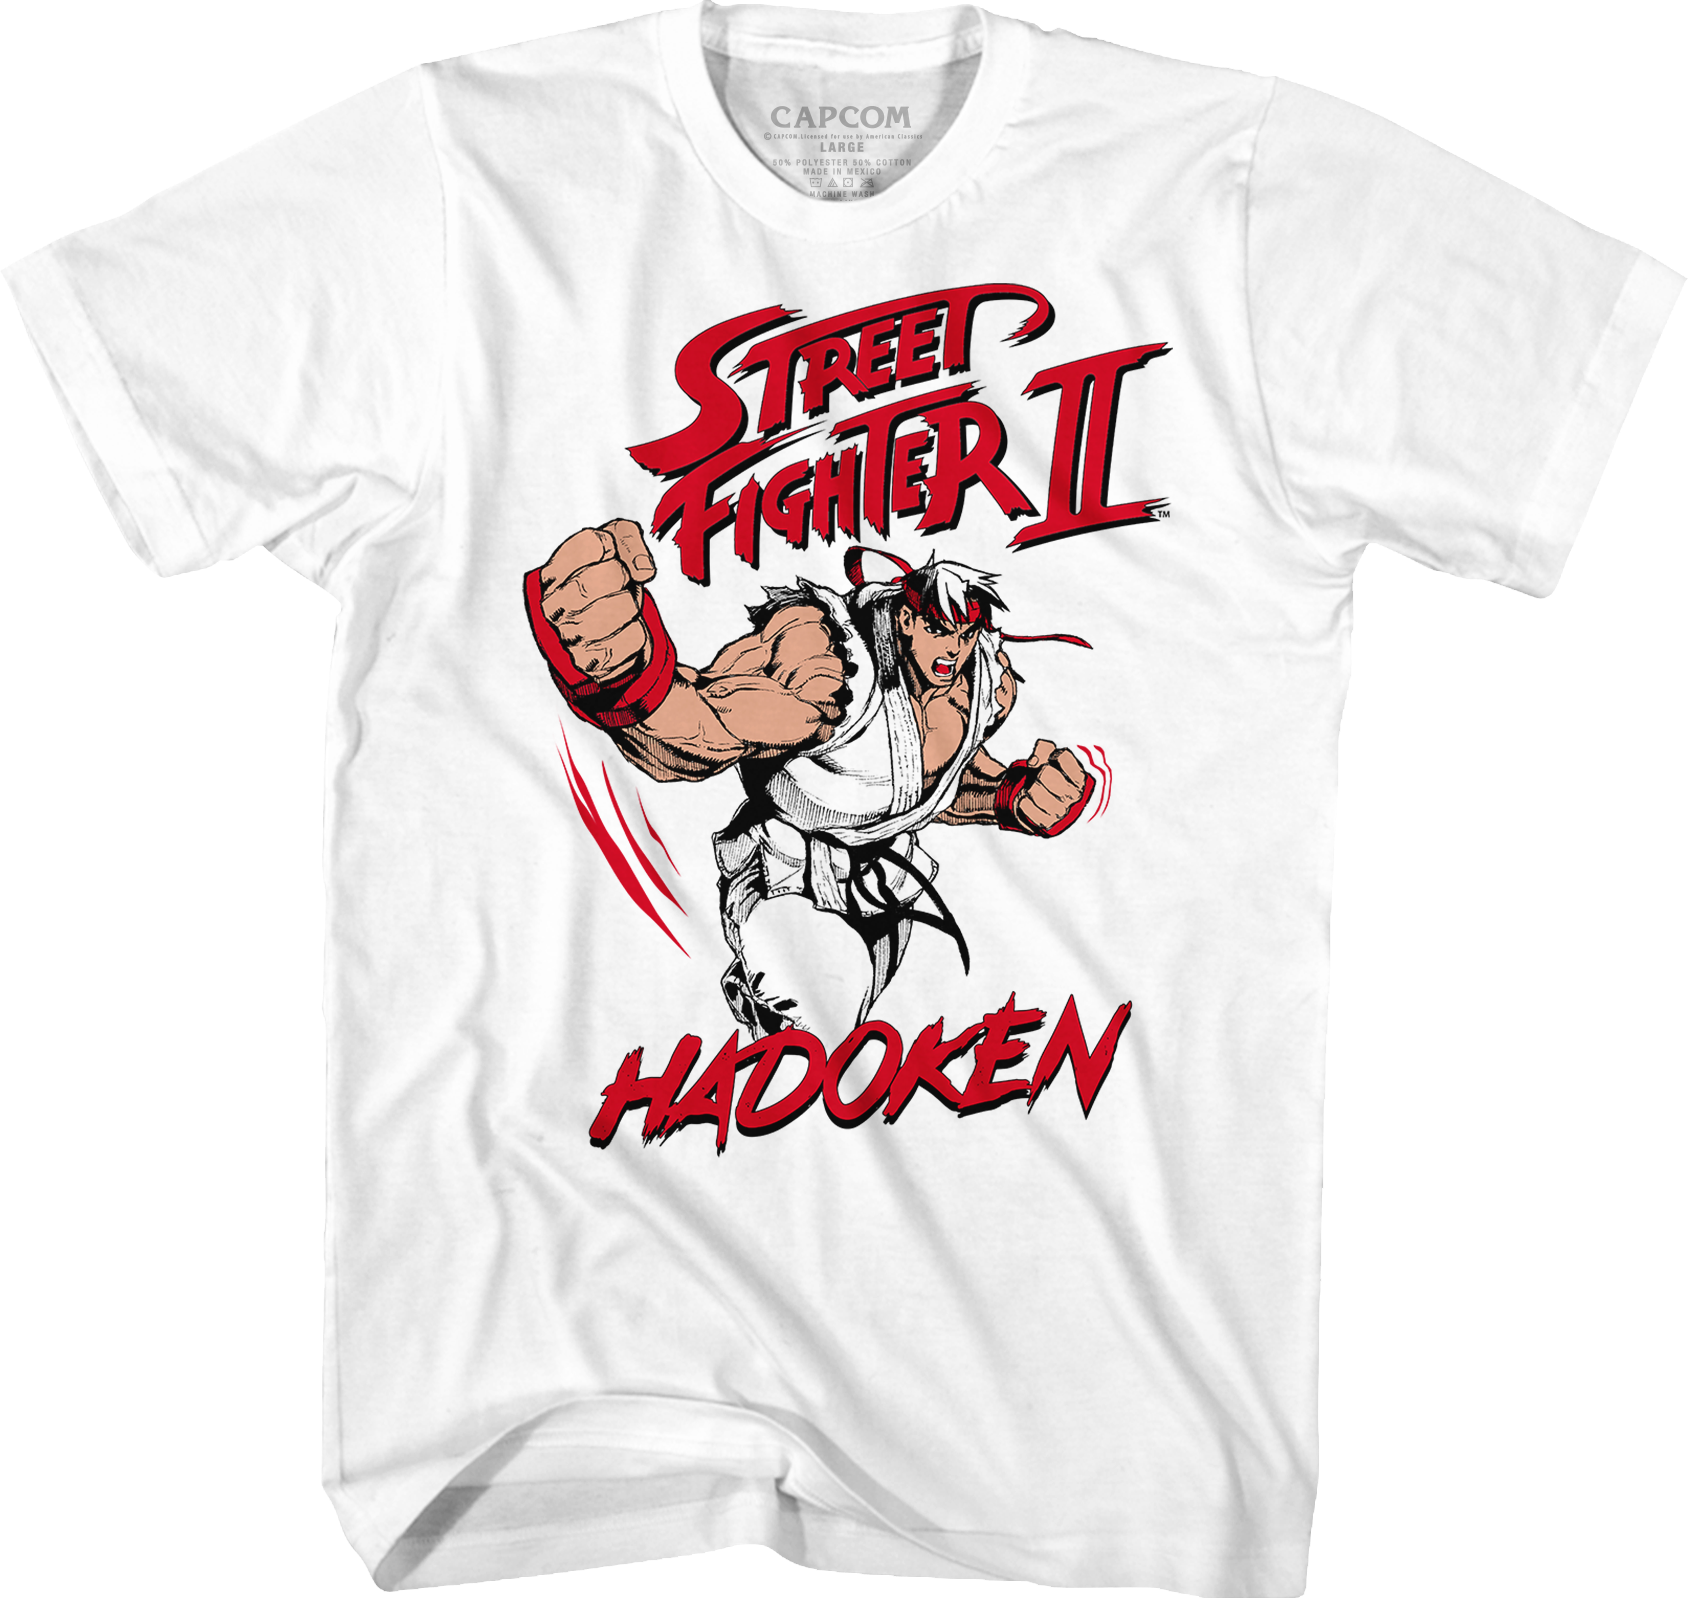 Ryu Hadoken Street Fighter T-Shirt